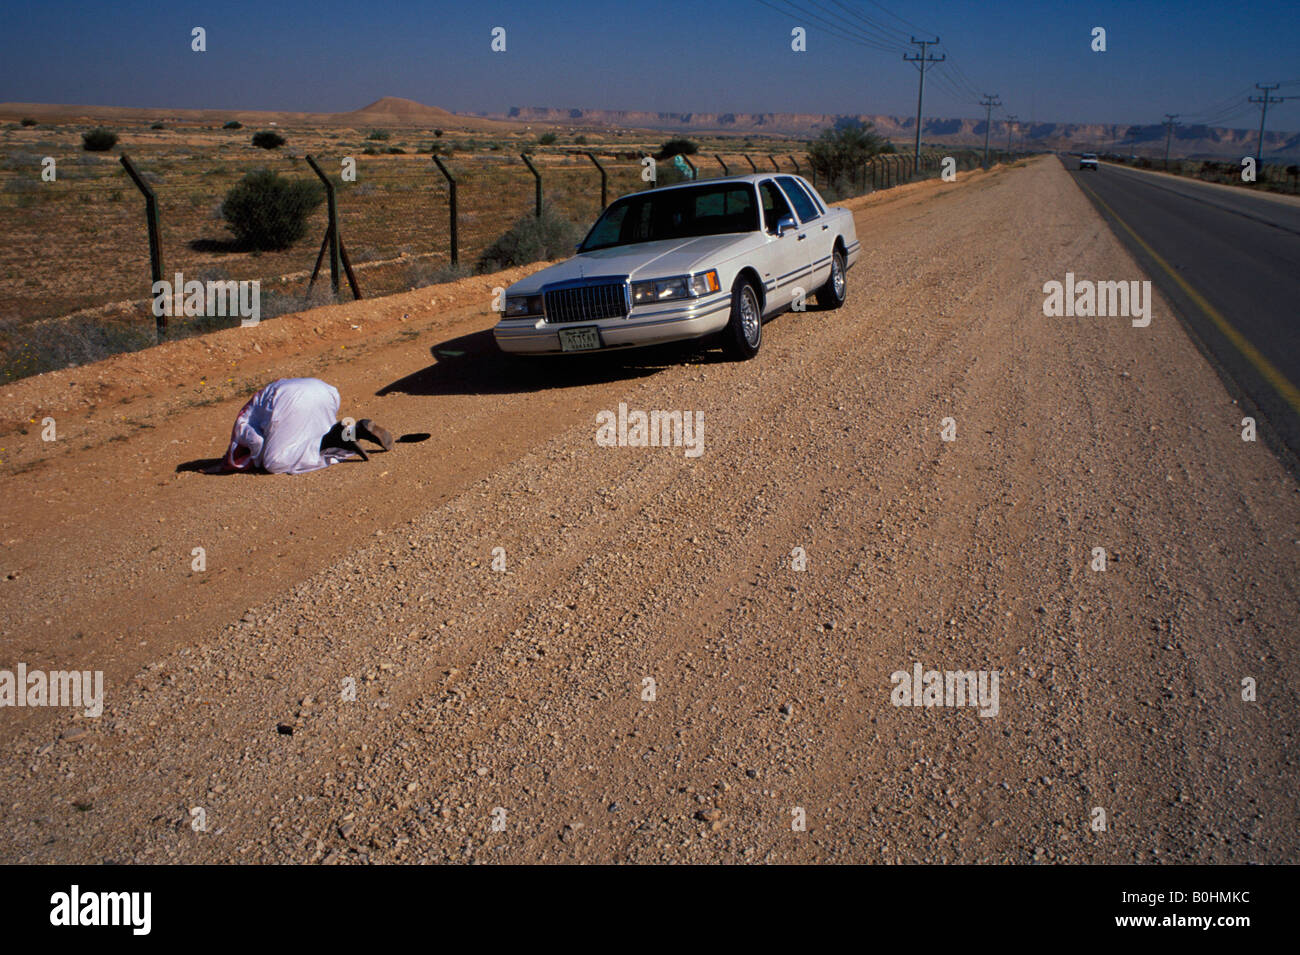 Un homme qui prie par une voiture au bord de la route, l'Arabie Saoudite. Banque D'Images